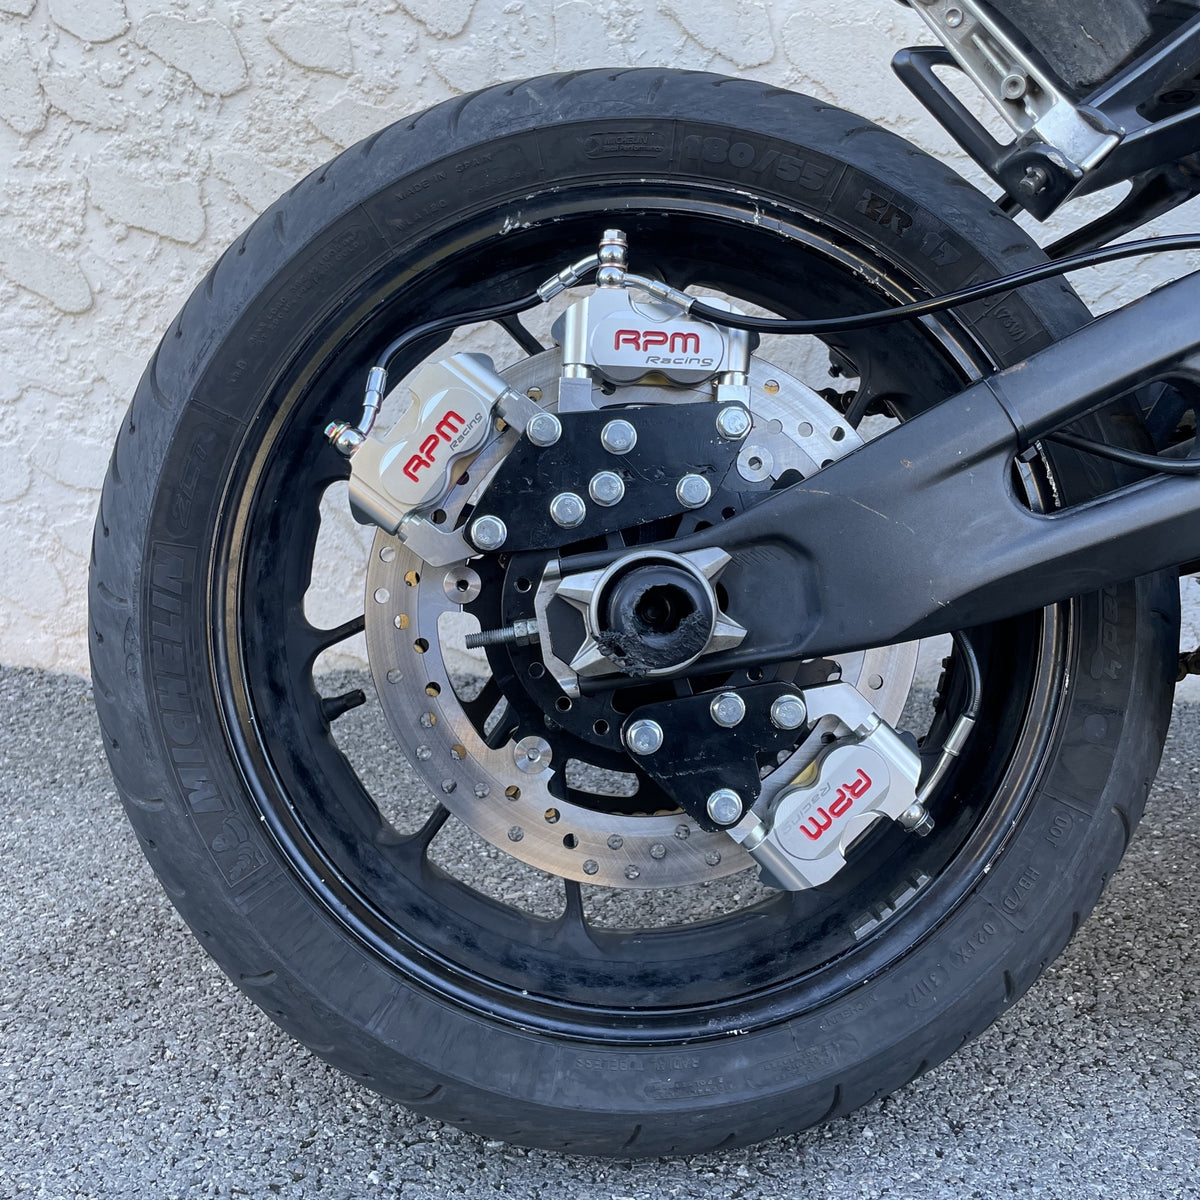 etrier de frein double pistons puissant pour moto ou scooter